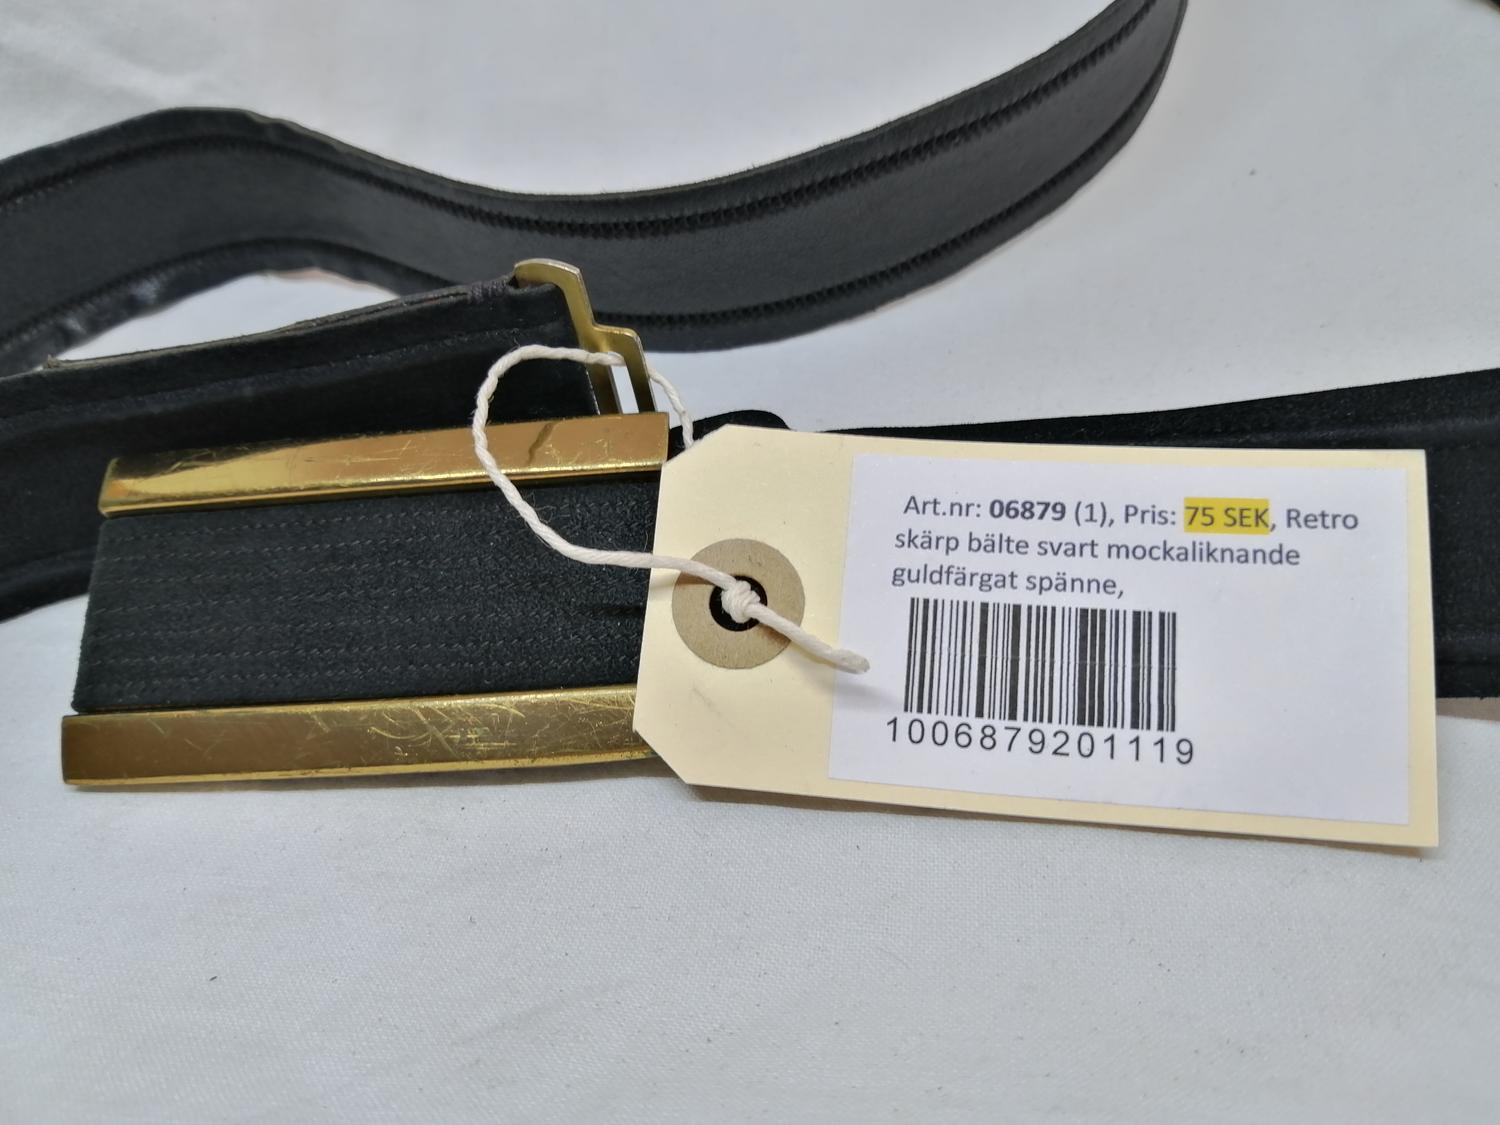 Retro skärp bälte svart mockaliknande guldfärgat spänne